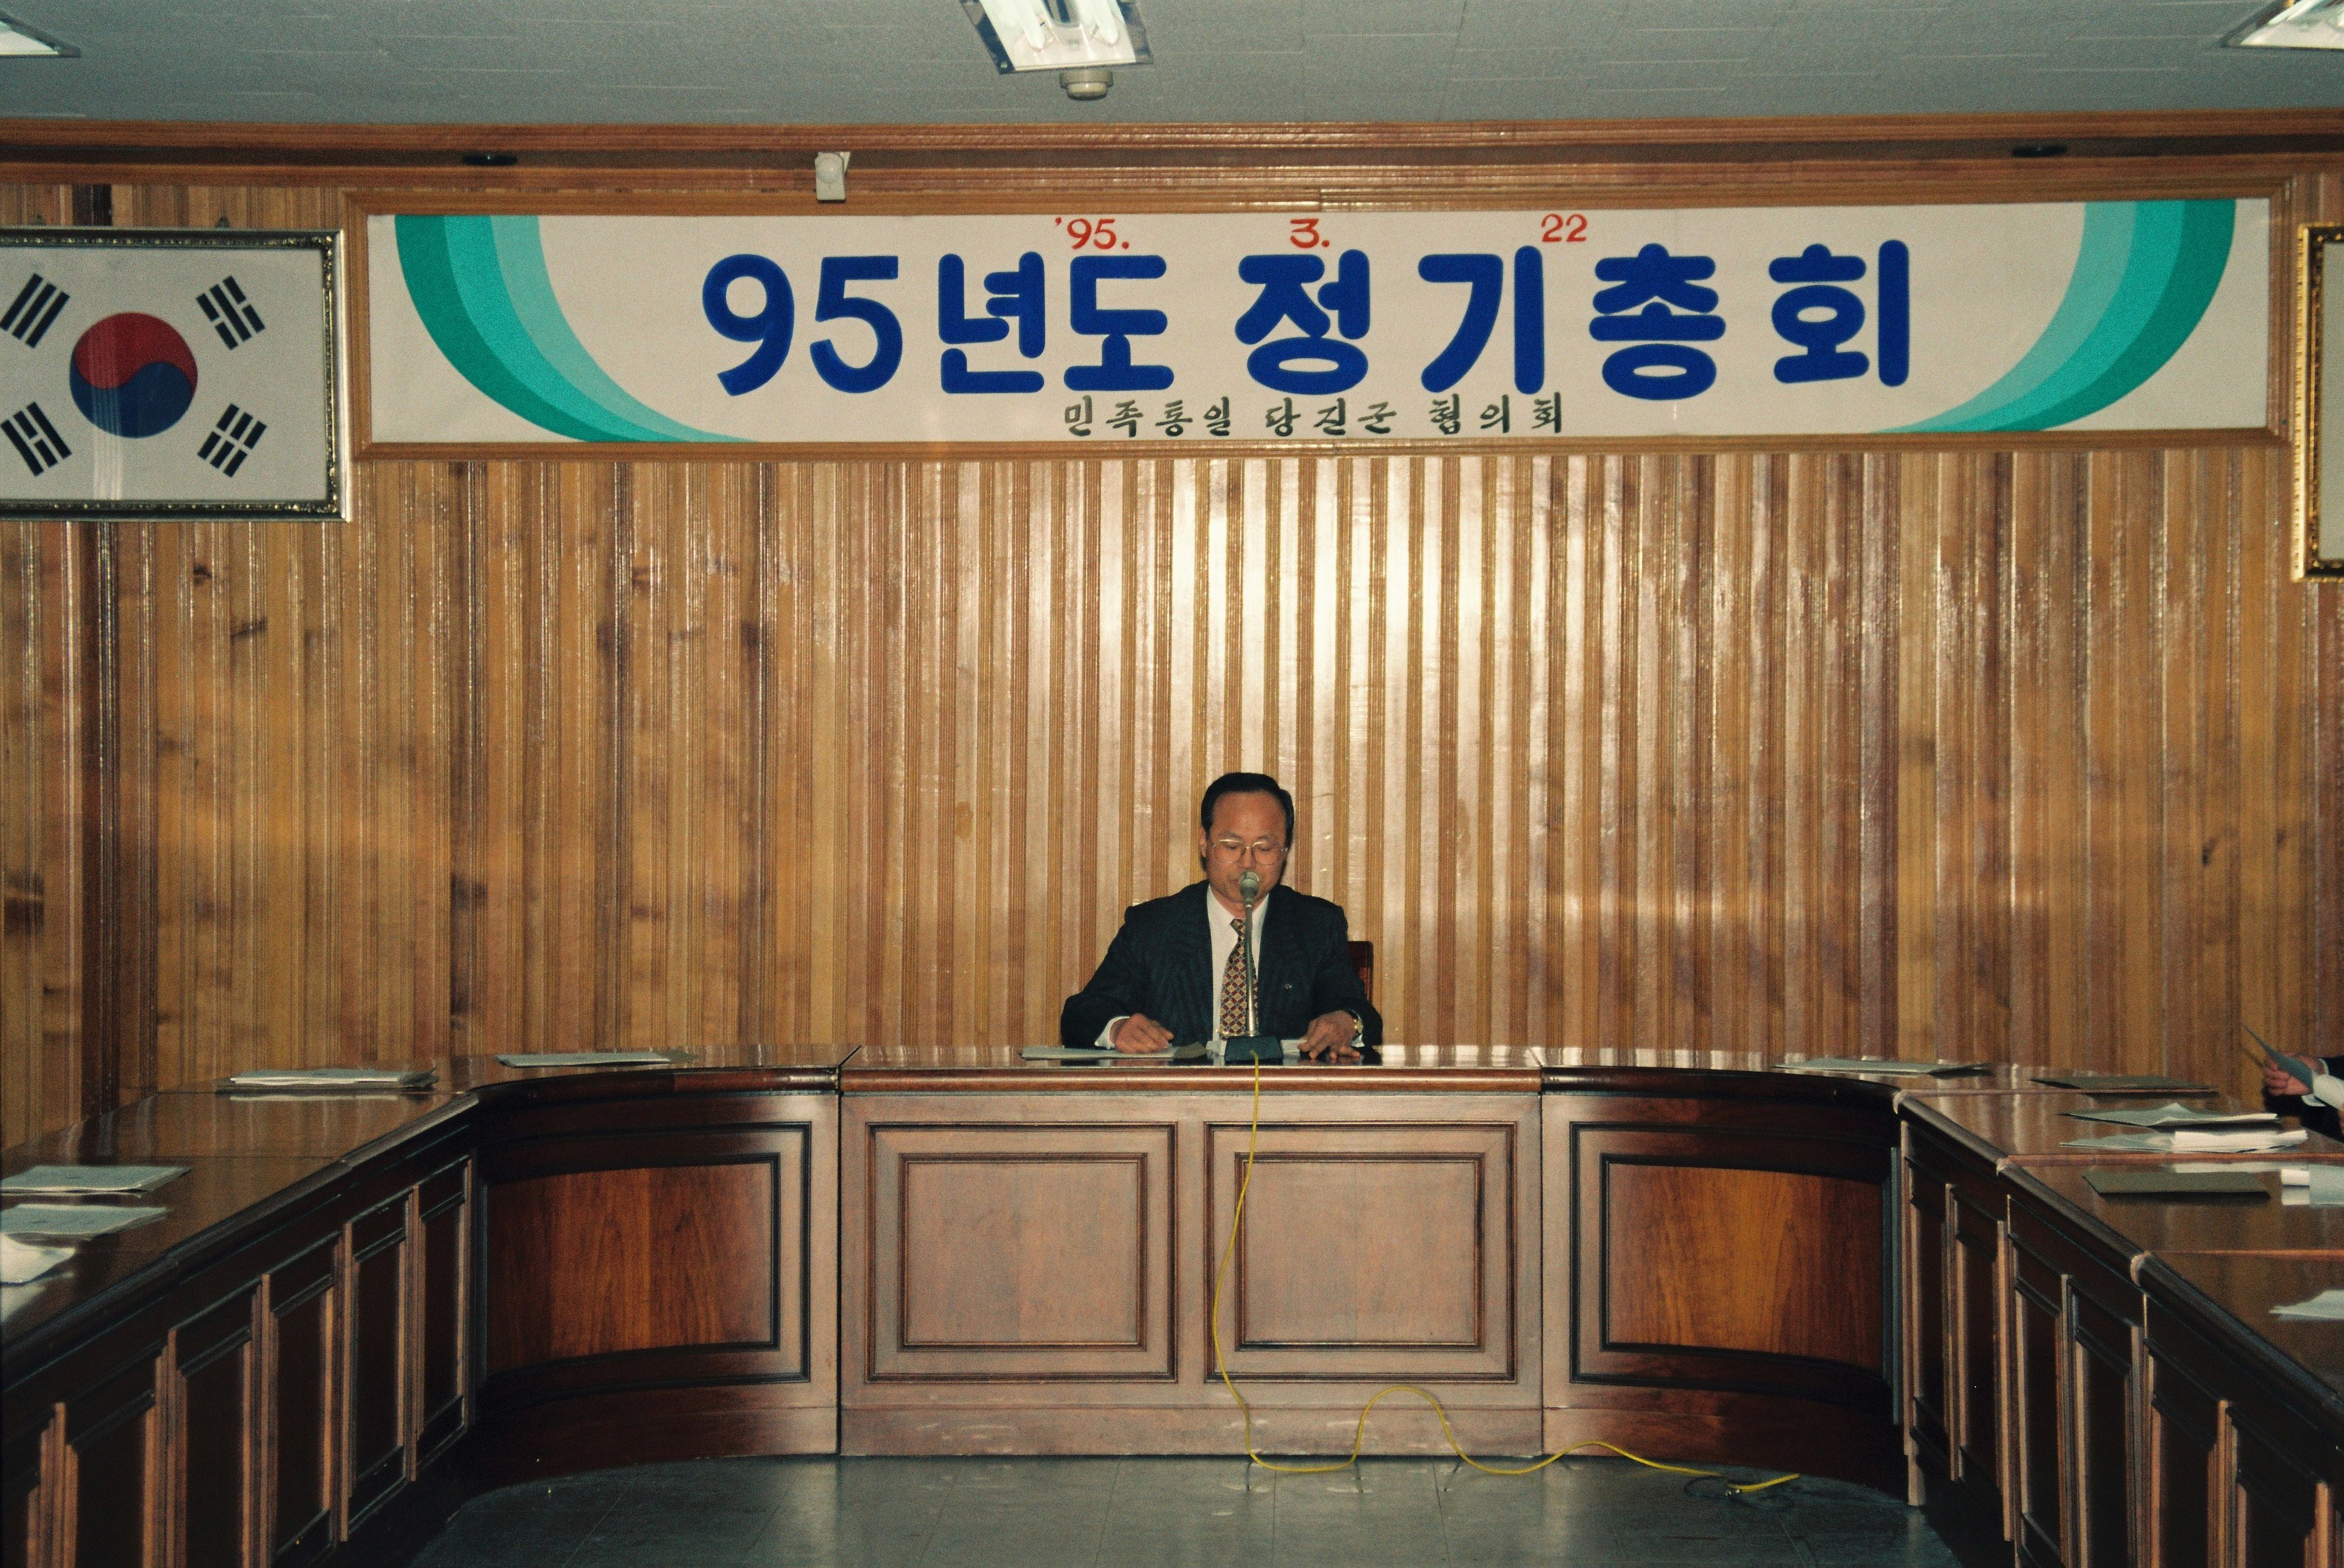 사진자료(1990년대)/1995/